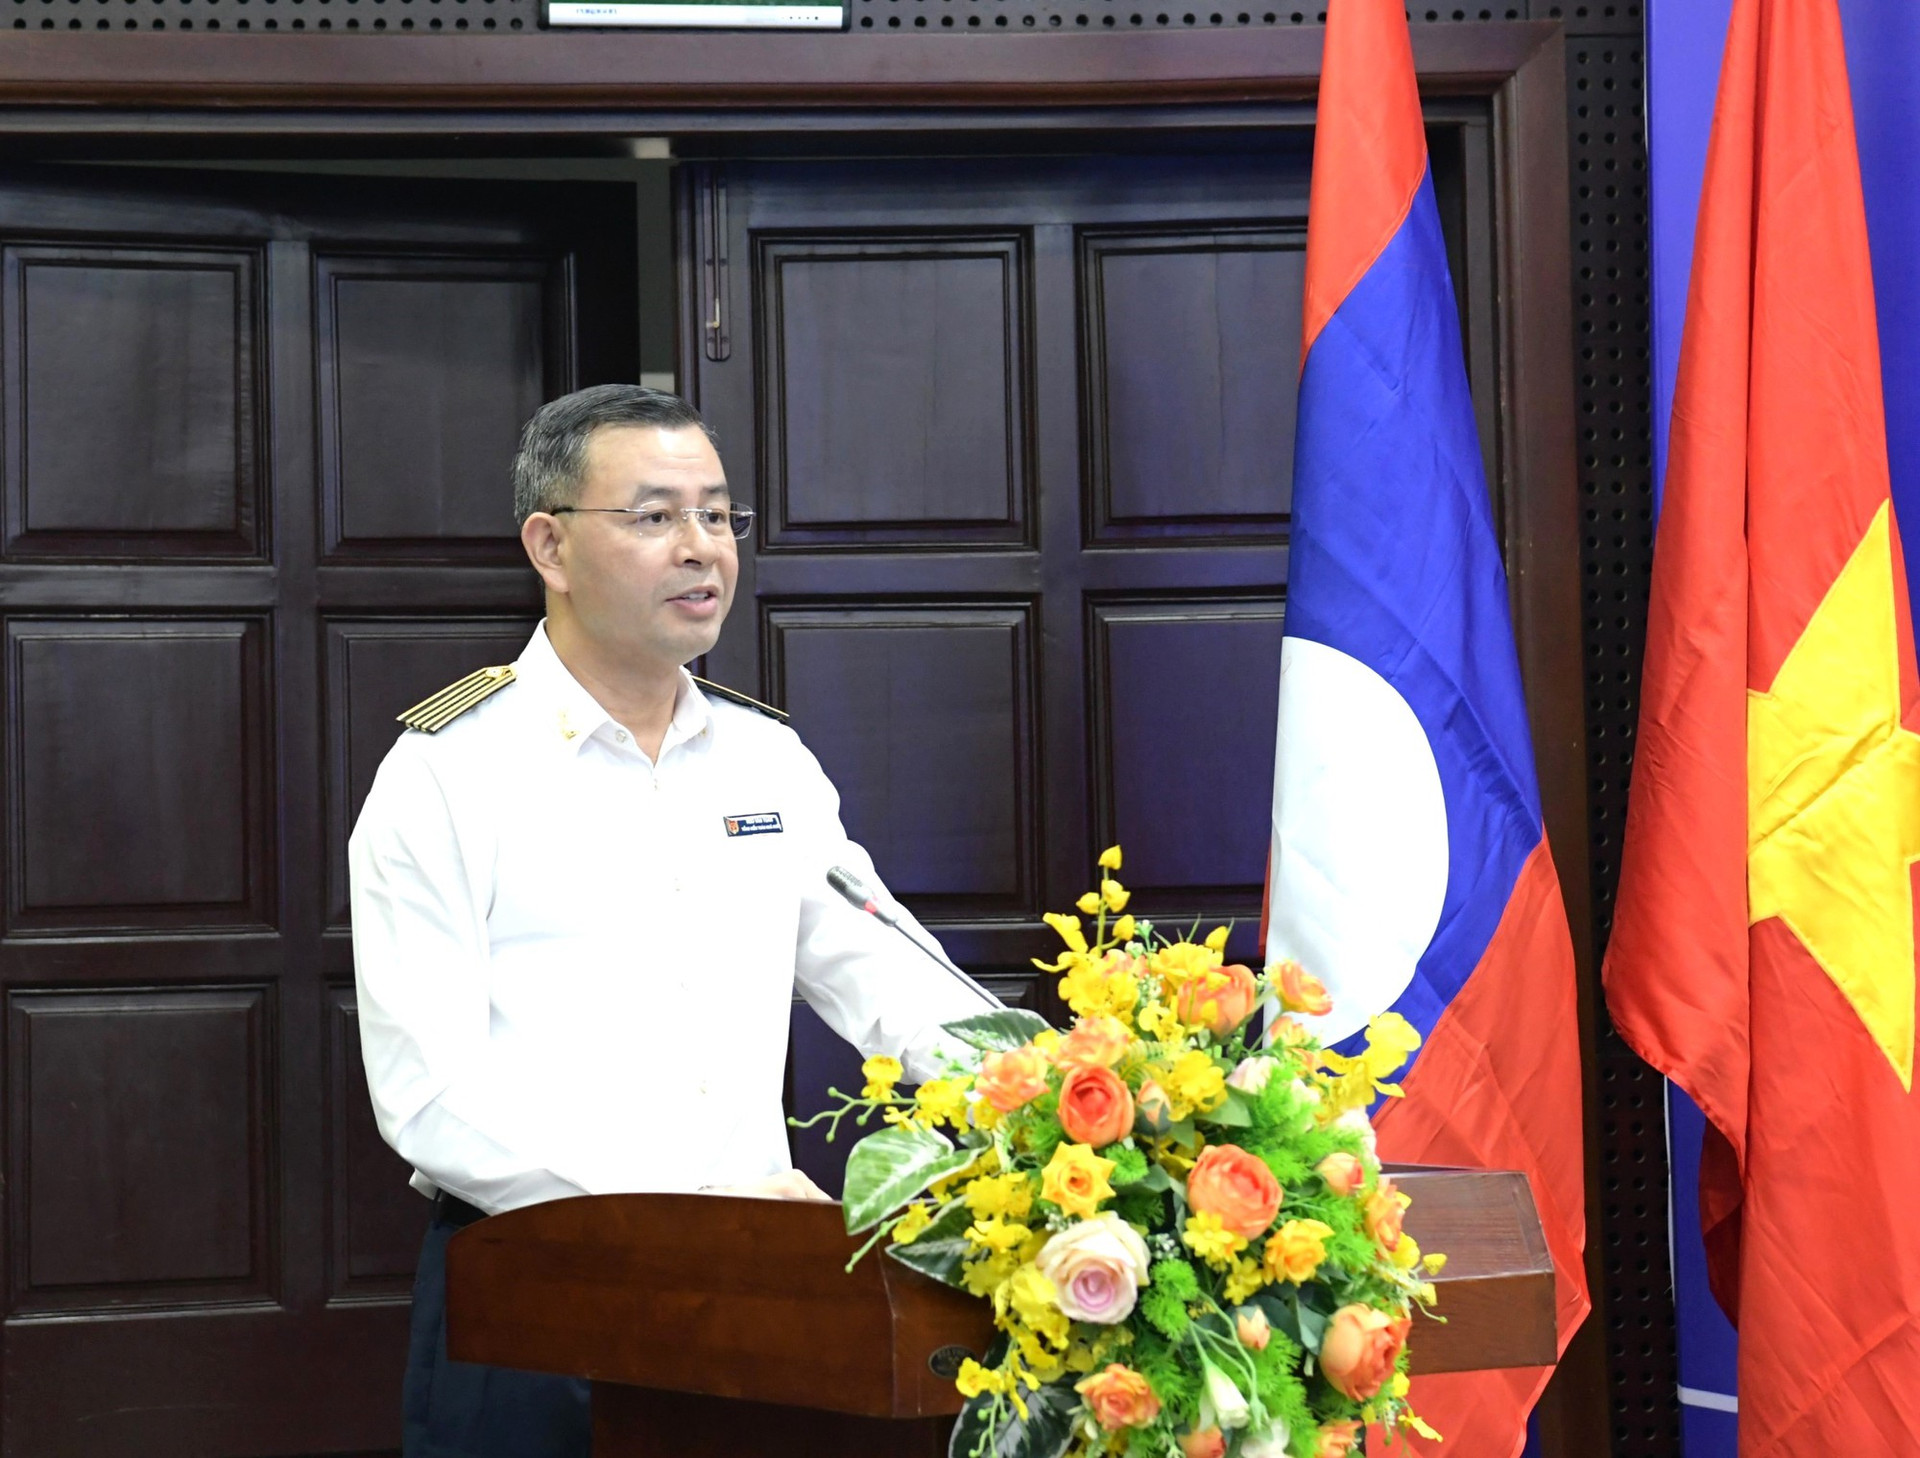 Campuchia-Lào-Việt Nam chia sẻ kinh nghiệm nâng cao hiệu quả kiểm toán - Ảnh 3.